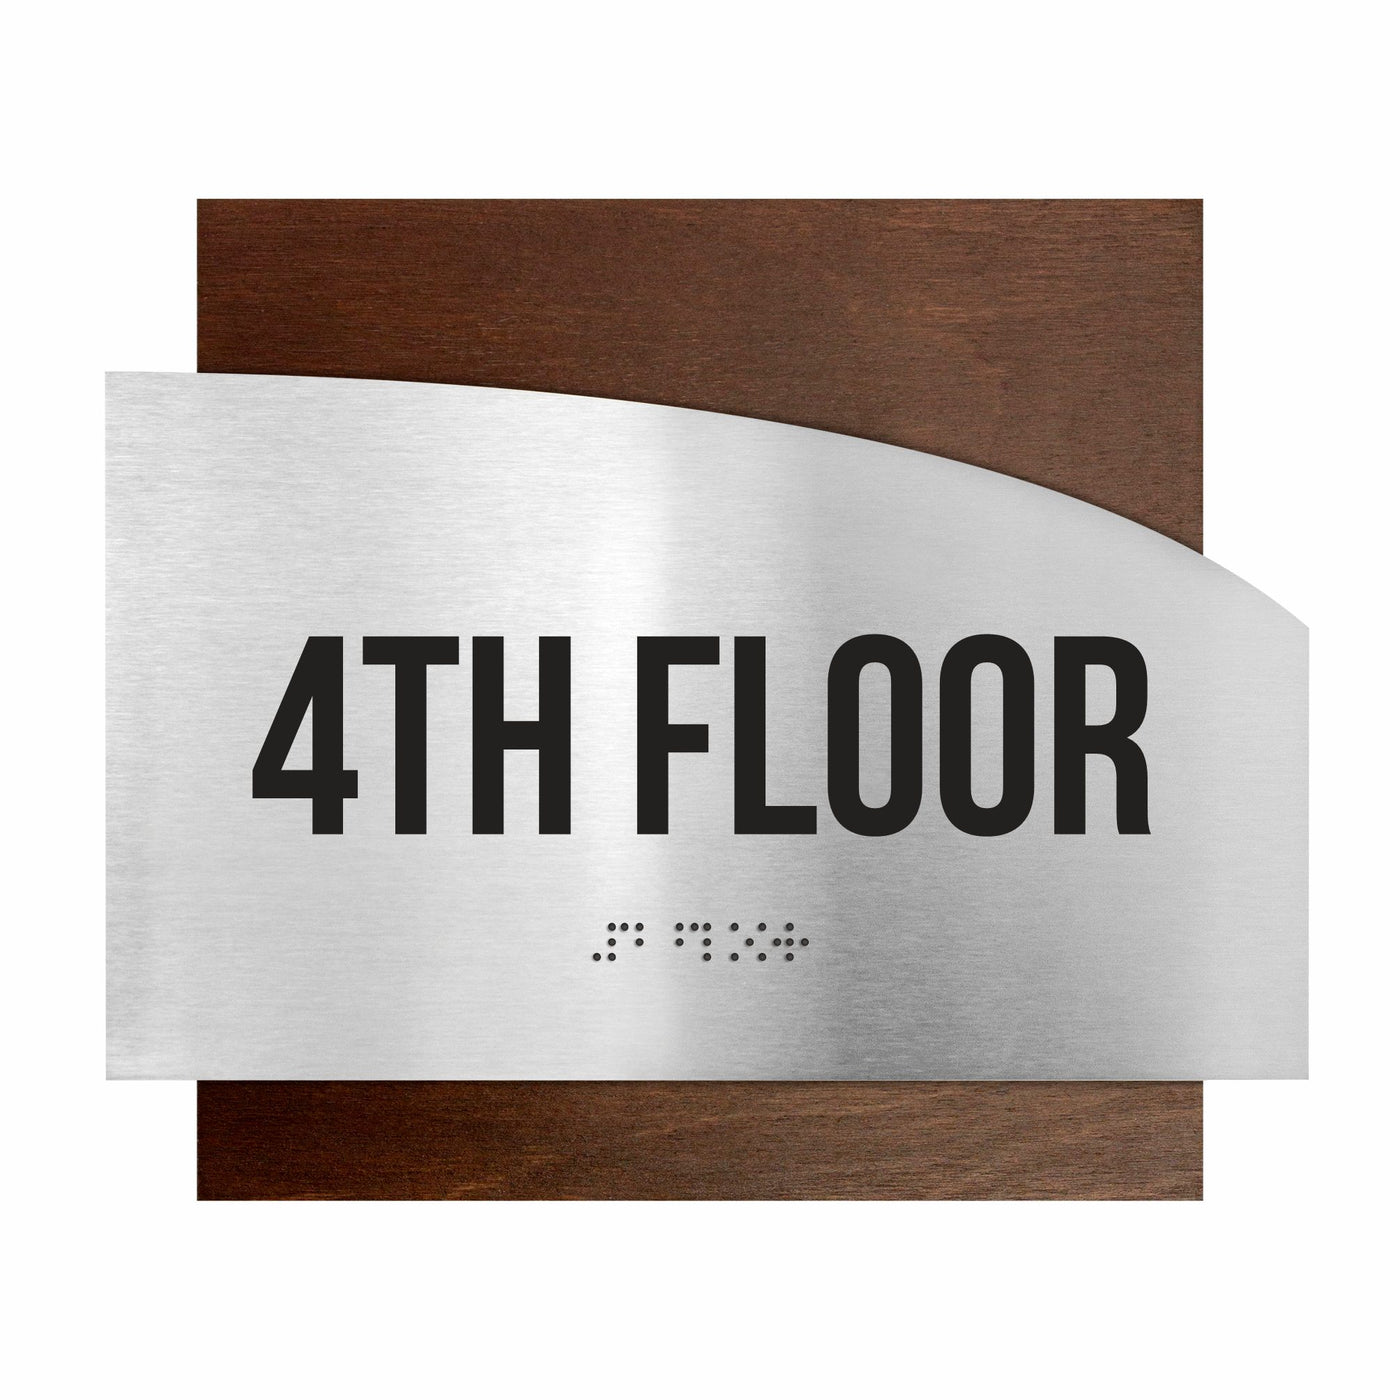 Floor Signs - Steel Sign For 4th Floor "Wave" Design